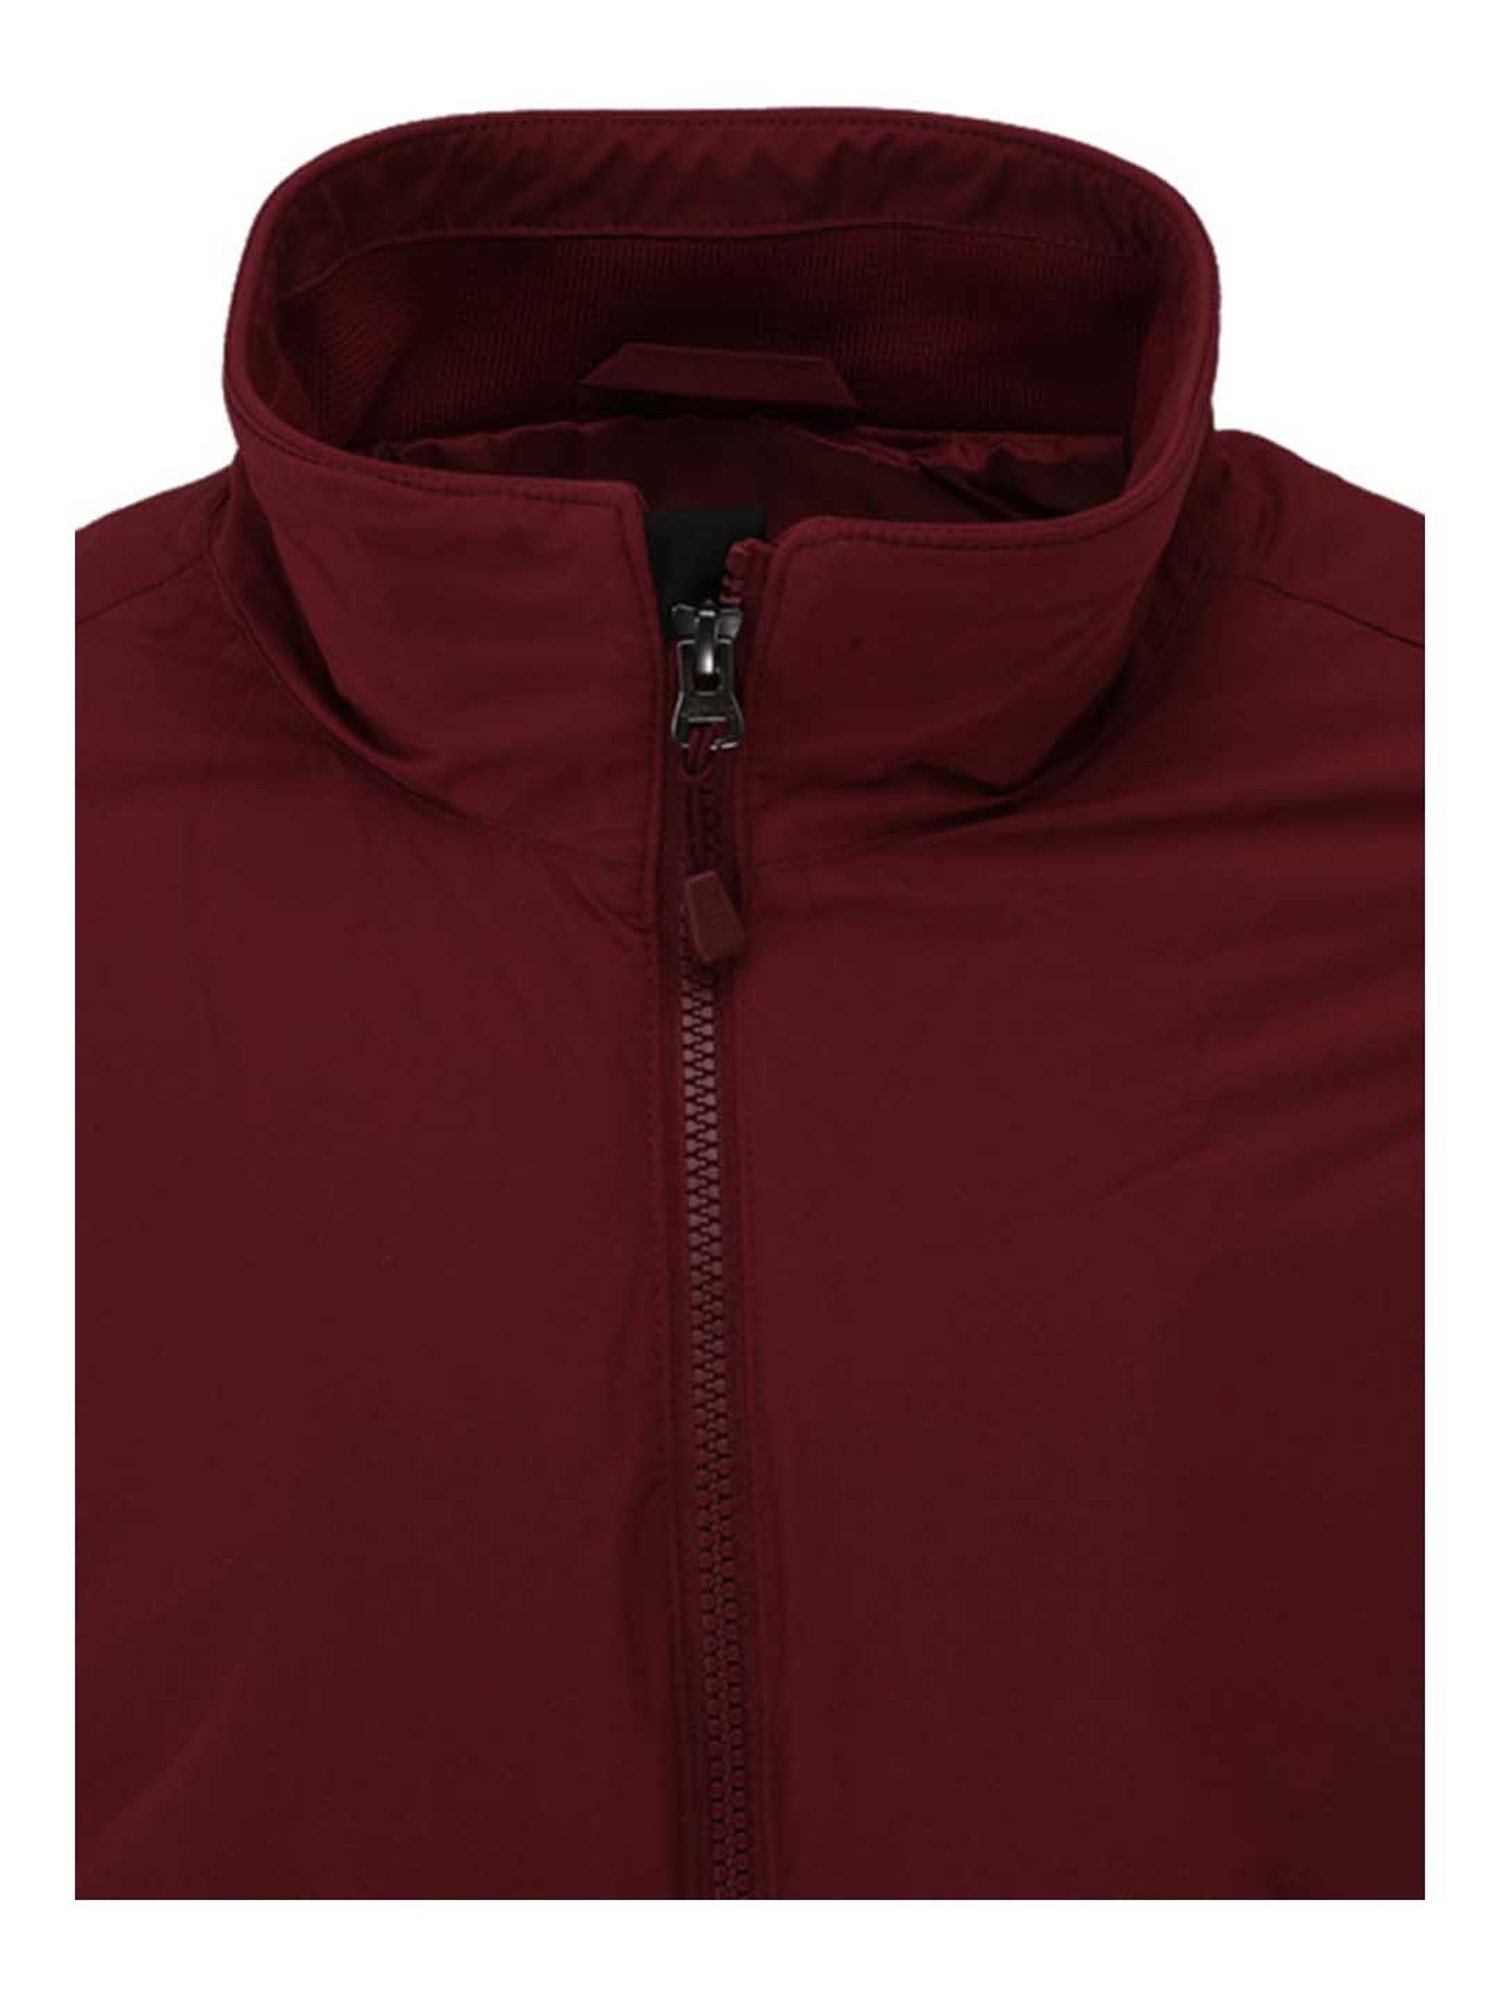 Buy Duke Green Full Sleeves Bomber Jacket for Men Online @ Tata CLiQ